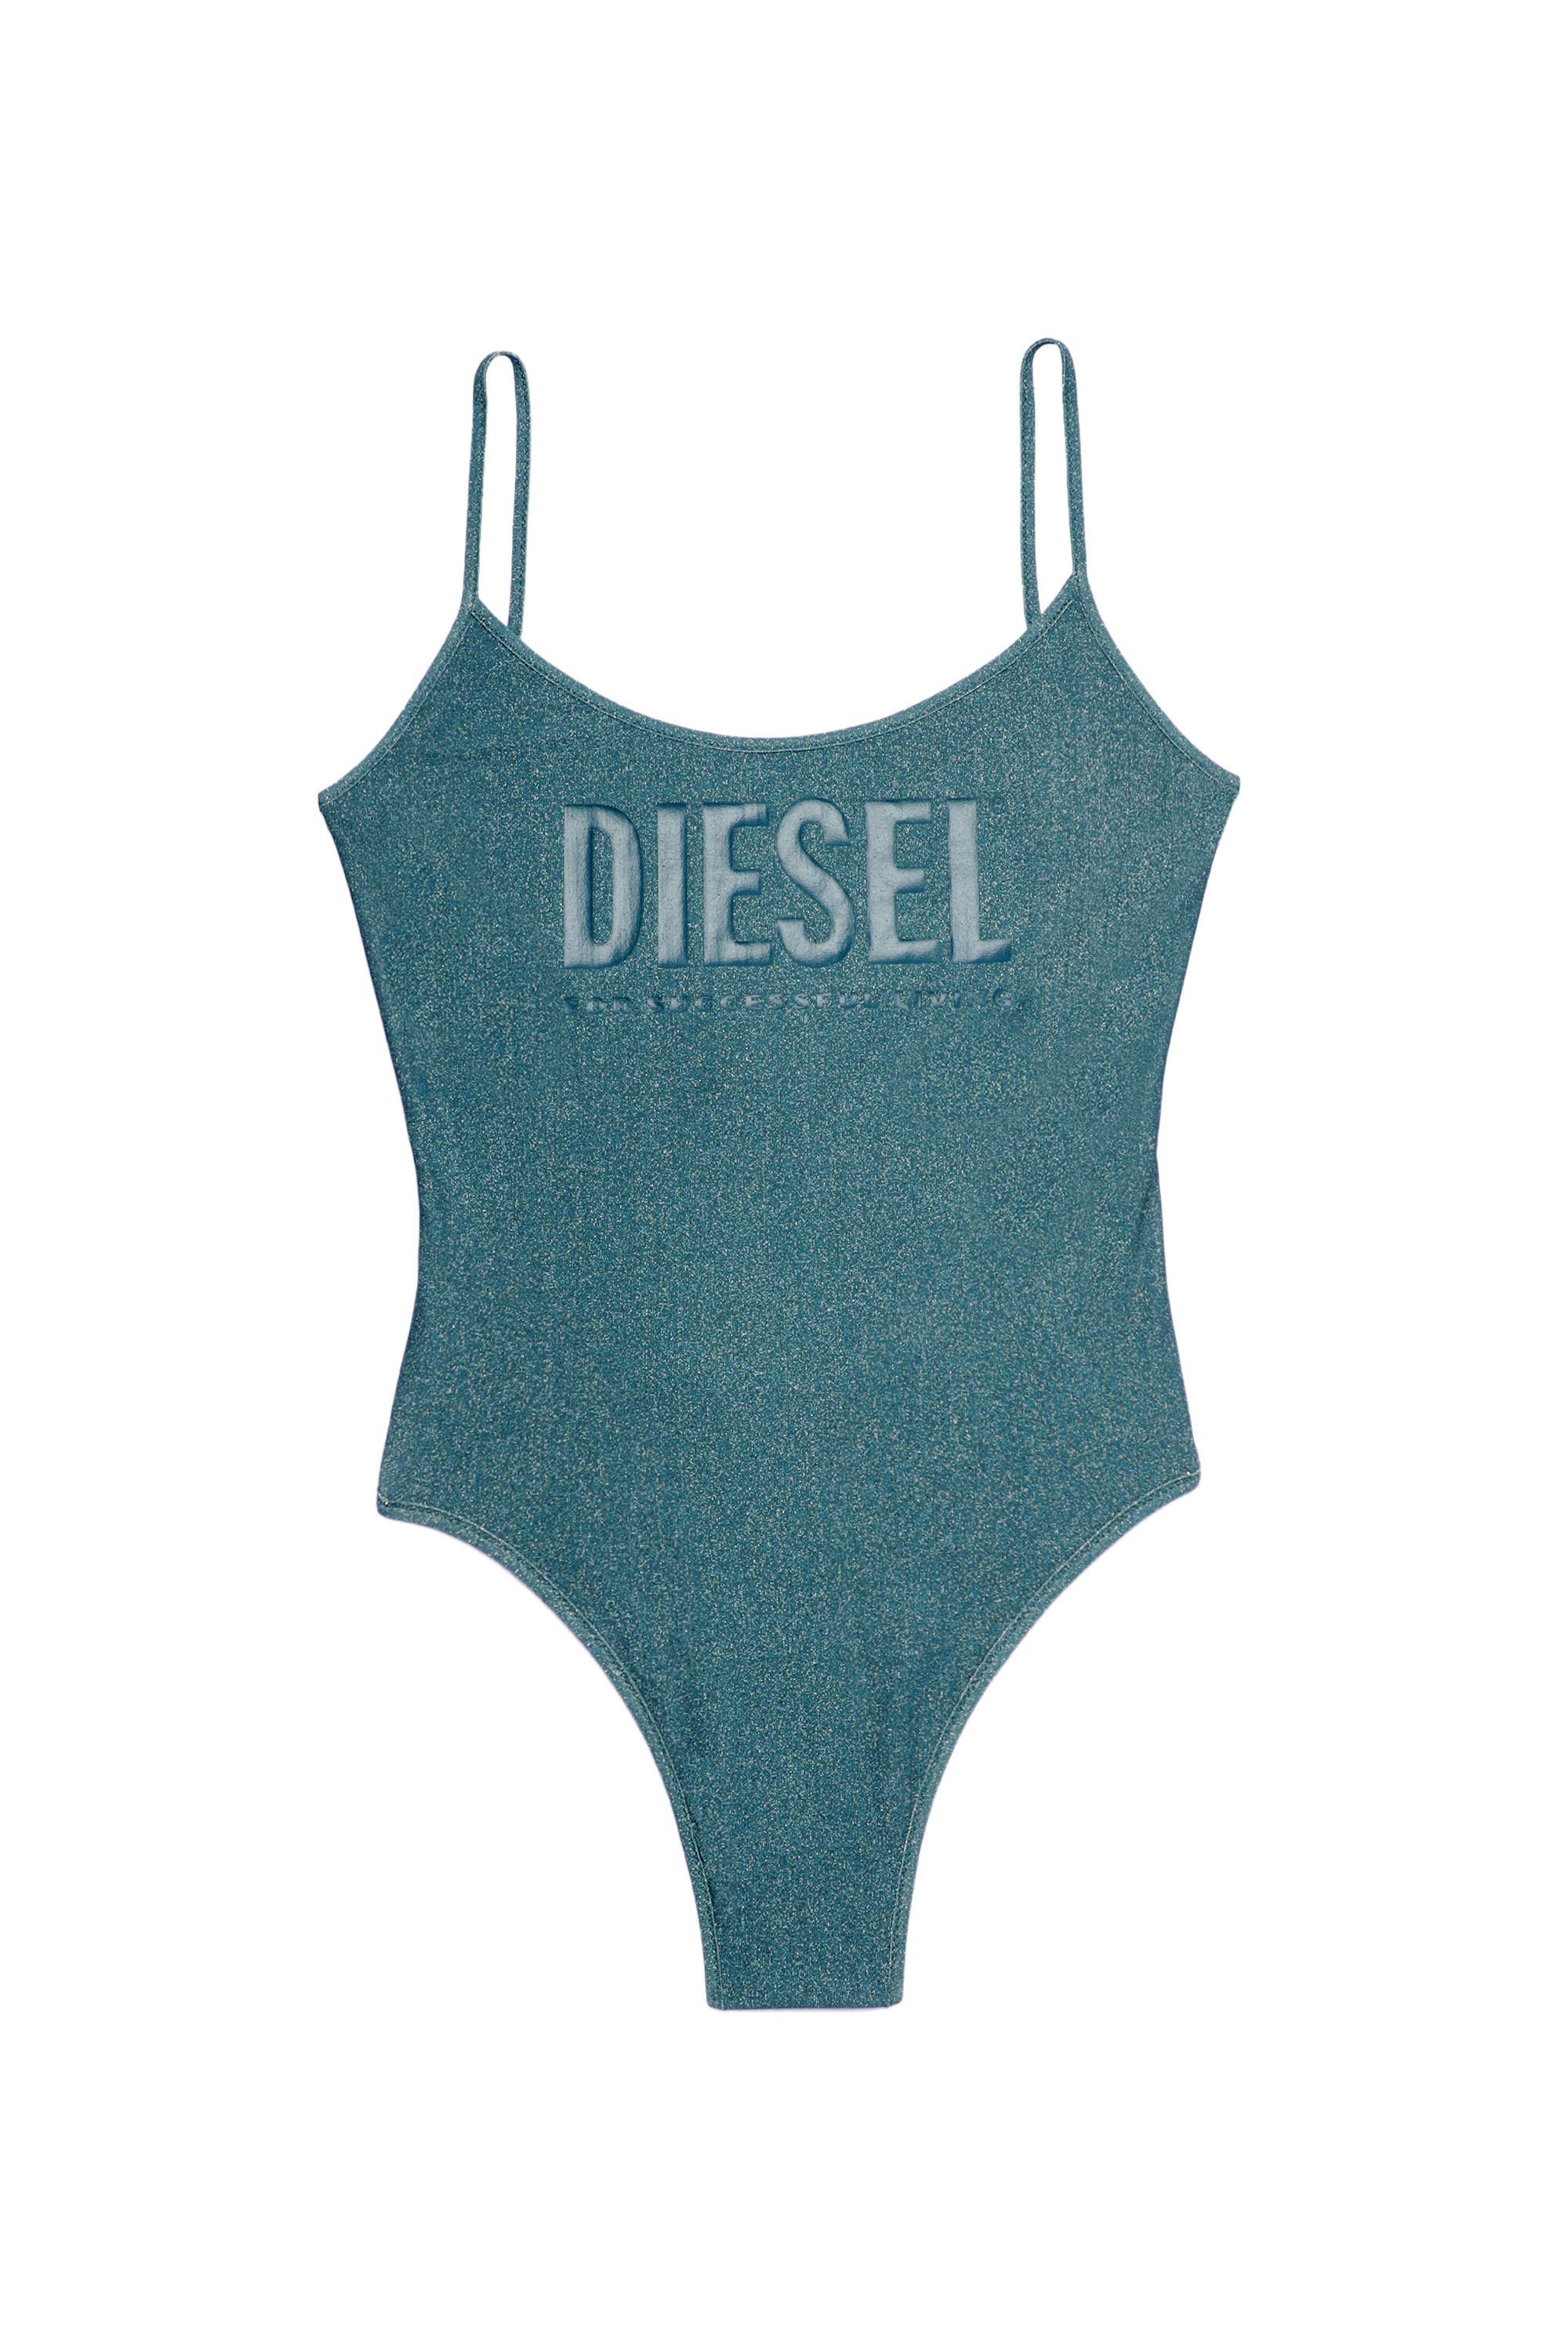 Diesel - BFSW-GRETEL, Blue - Image 2